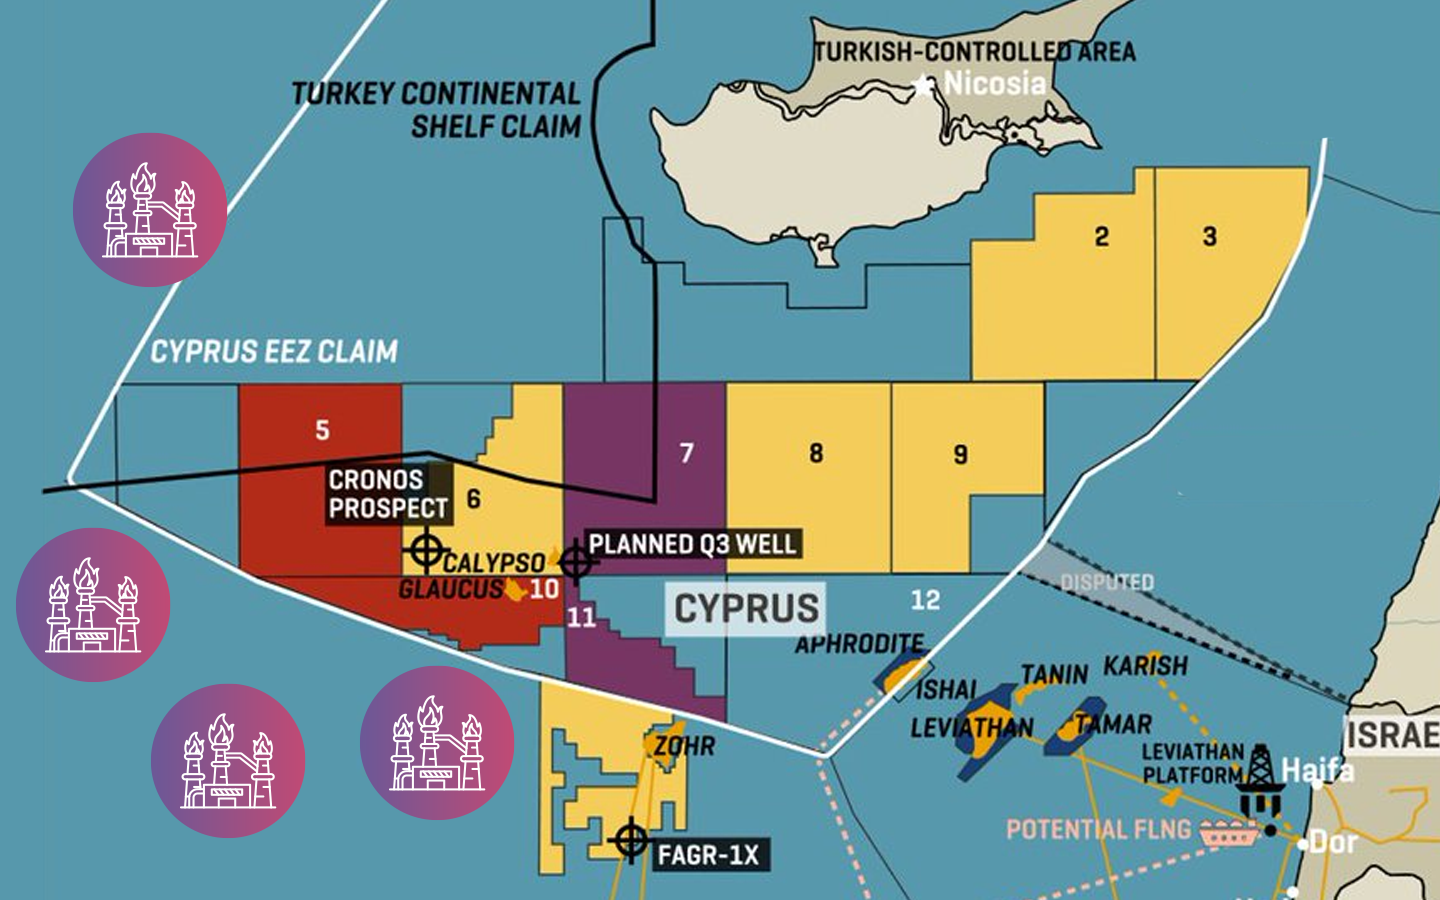 Ciprusira cserélhetjük az orosz gázt?